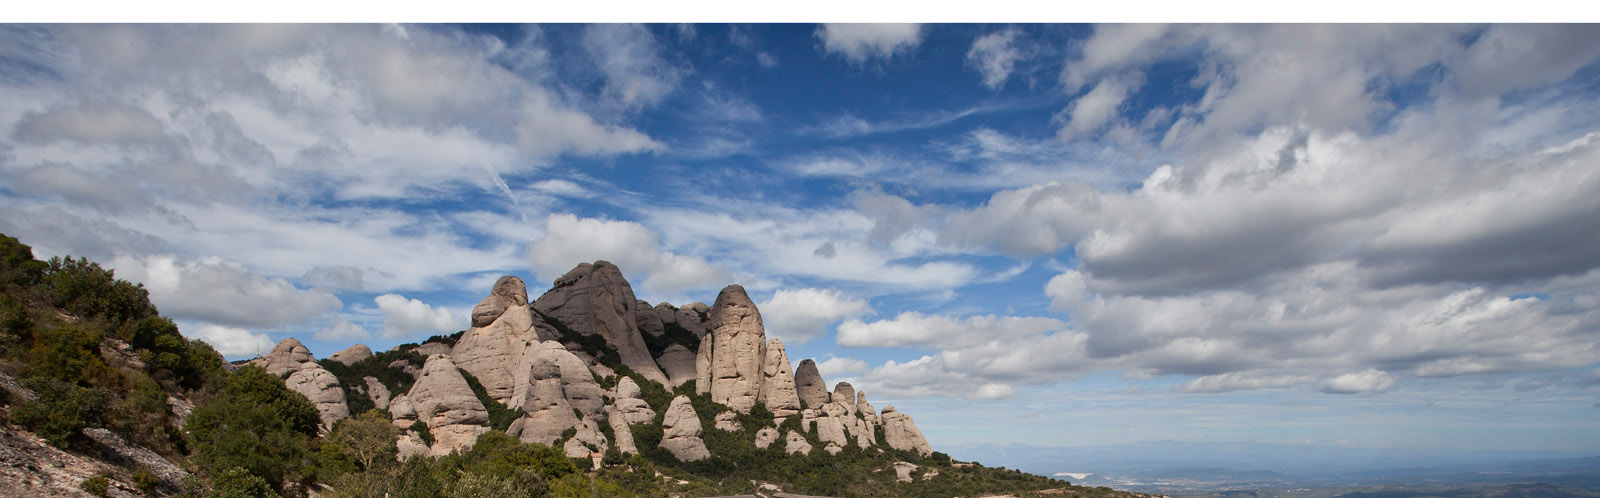 Vista panoràmica del Parc Natural de Montserrat / Vista panorámica del Parque Natural de Montserrat